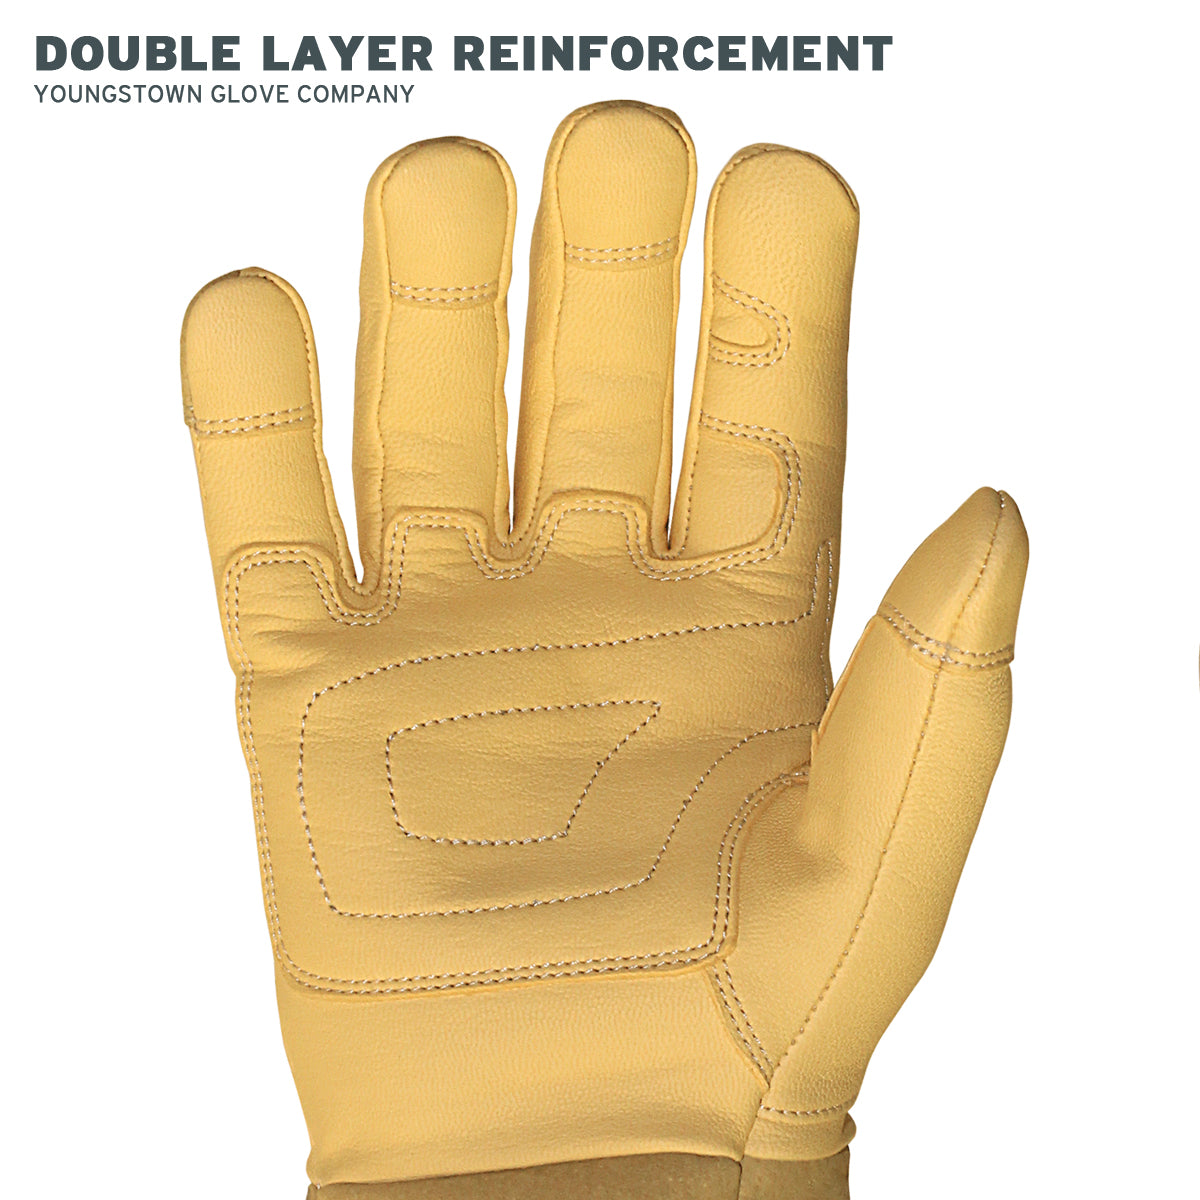 Leather Palm W/Safety Cuff Work Glove. Medium. 12/Pair/Pkg - gloves -  Leather-Work-Gloves - Janitorial Supplies Minneapolis